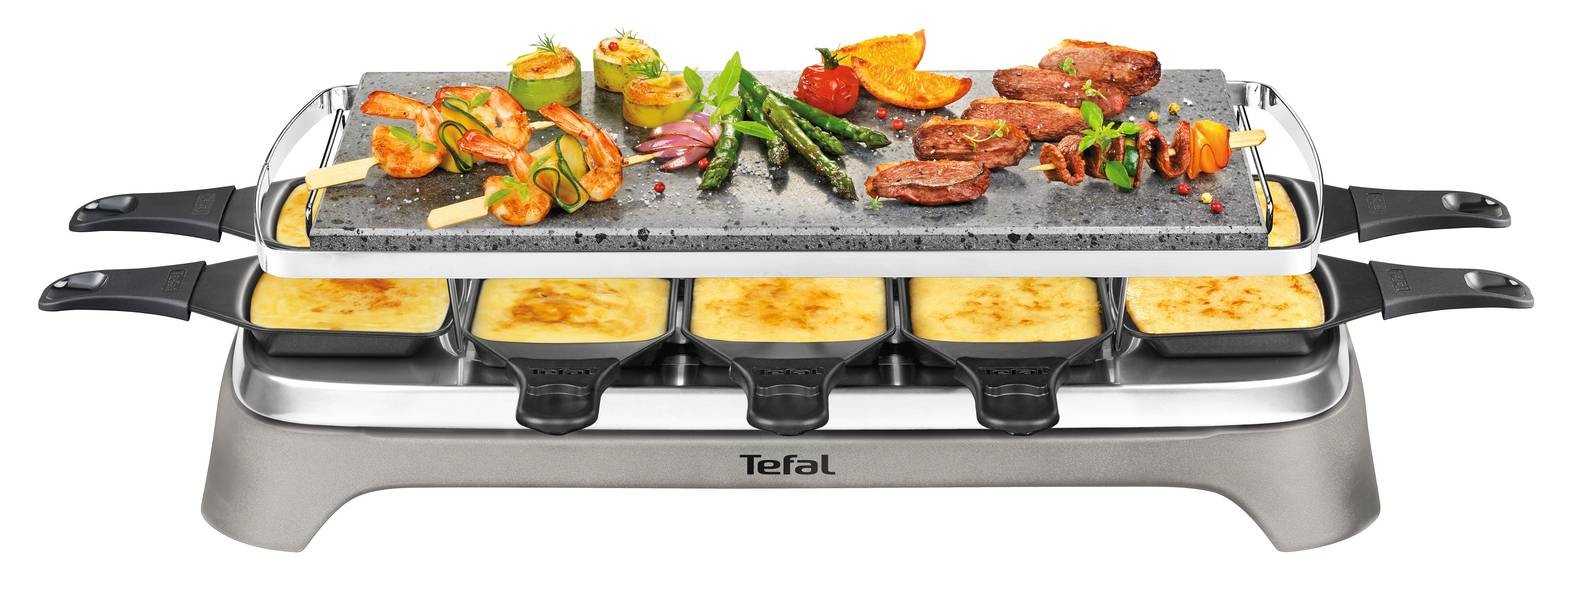 TEFAL Raclette Multifonction Inox & Design 10 coupelles - PR457B12